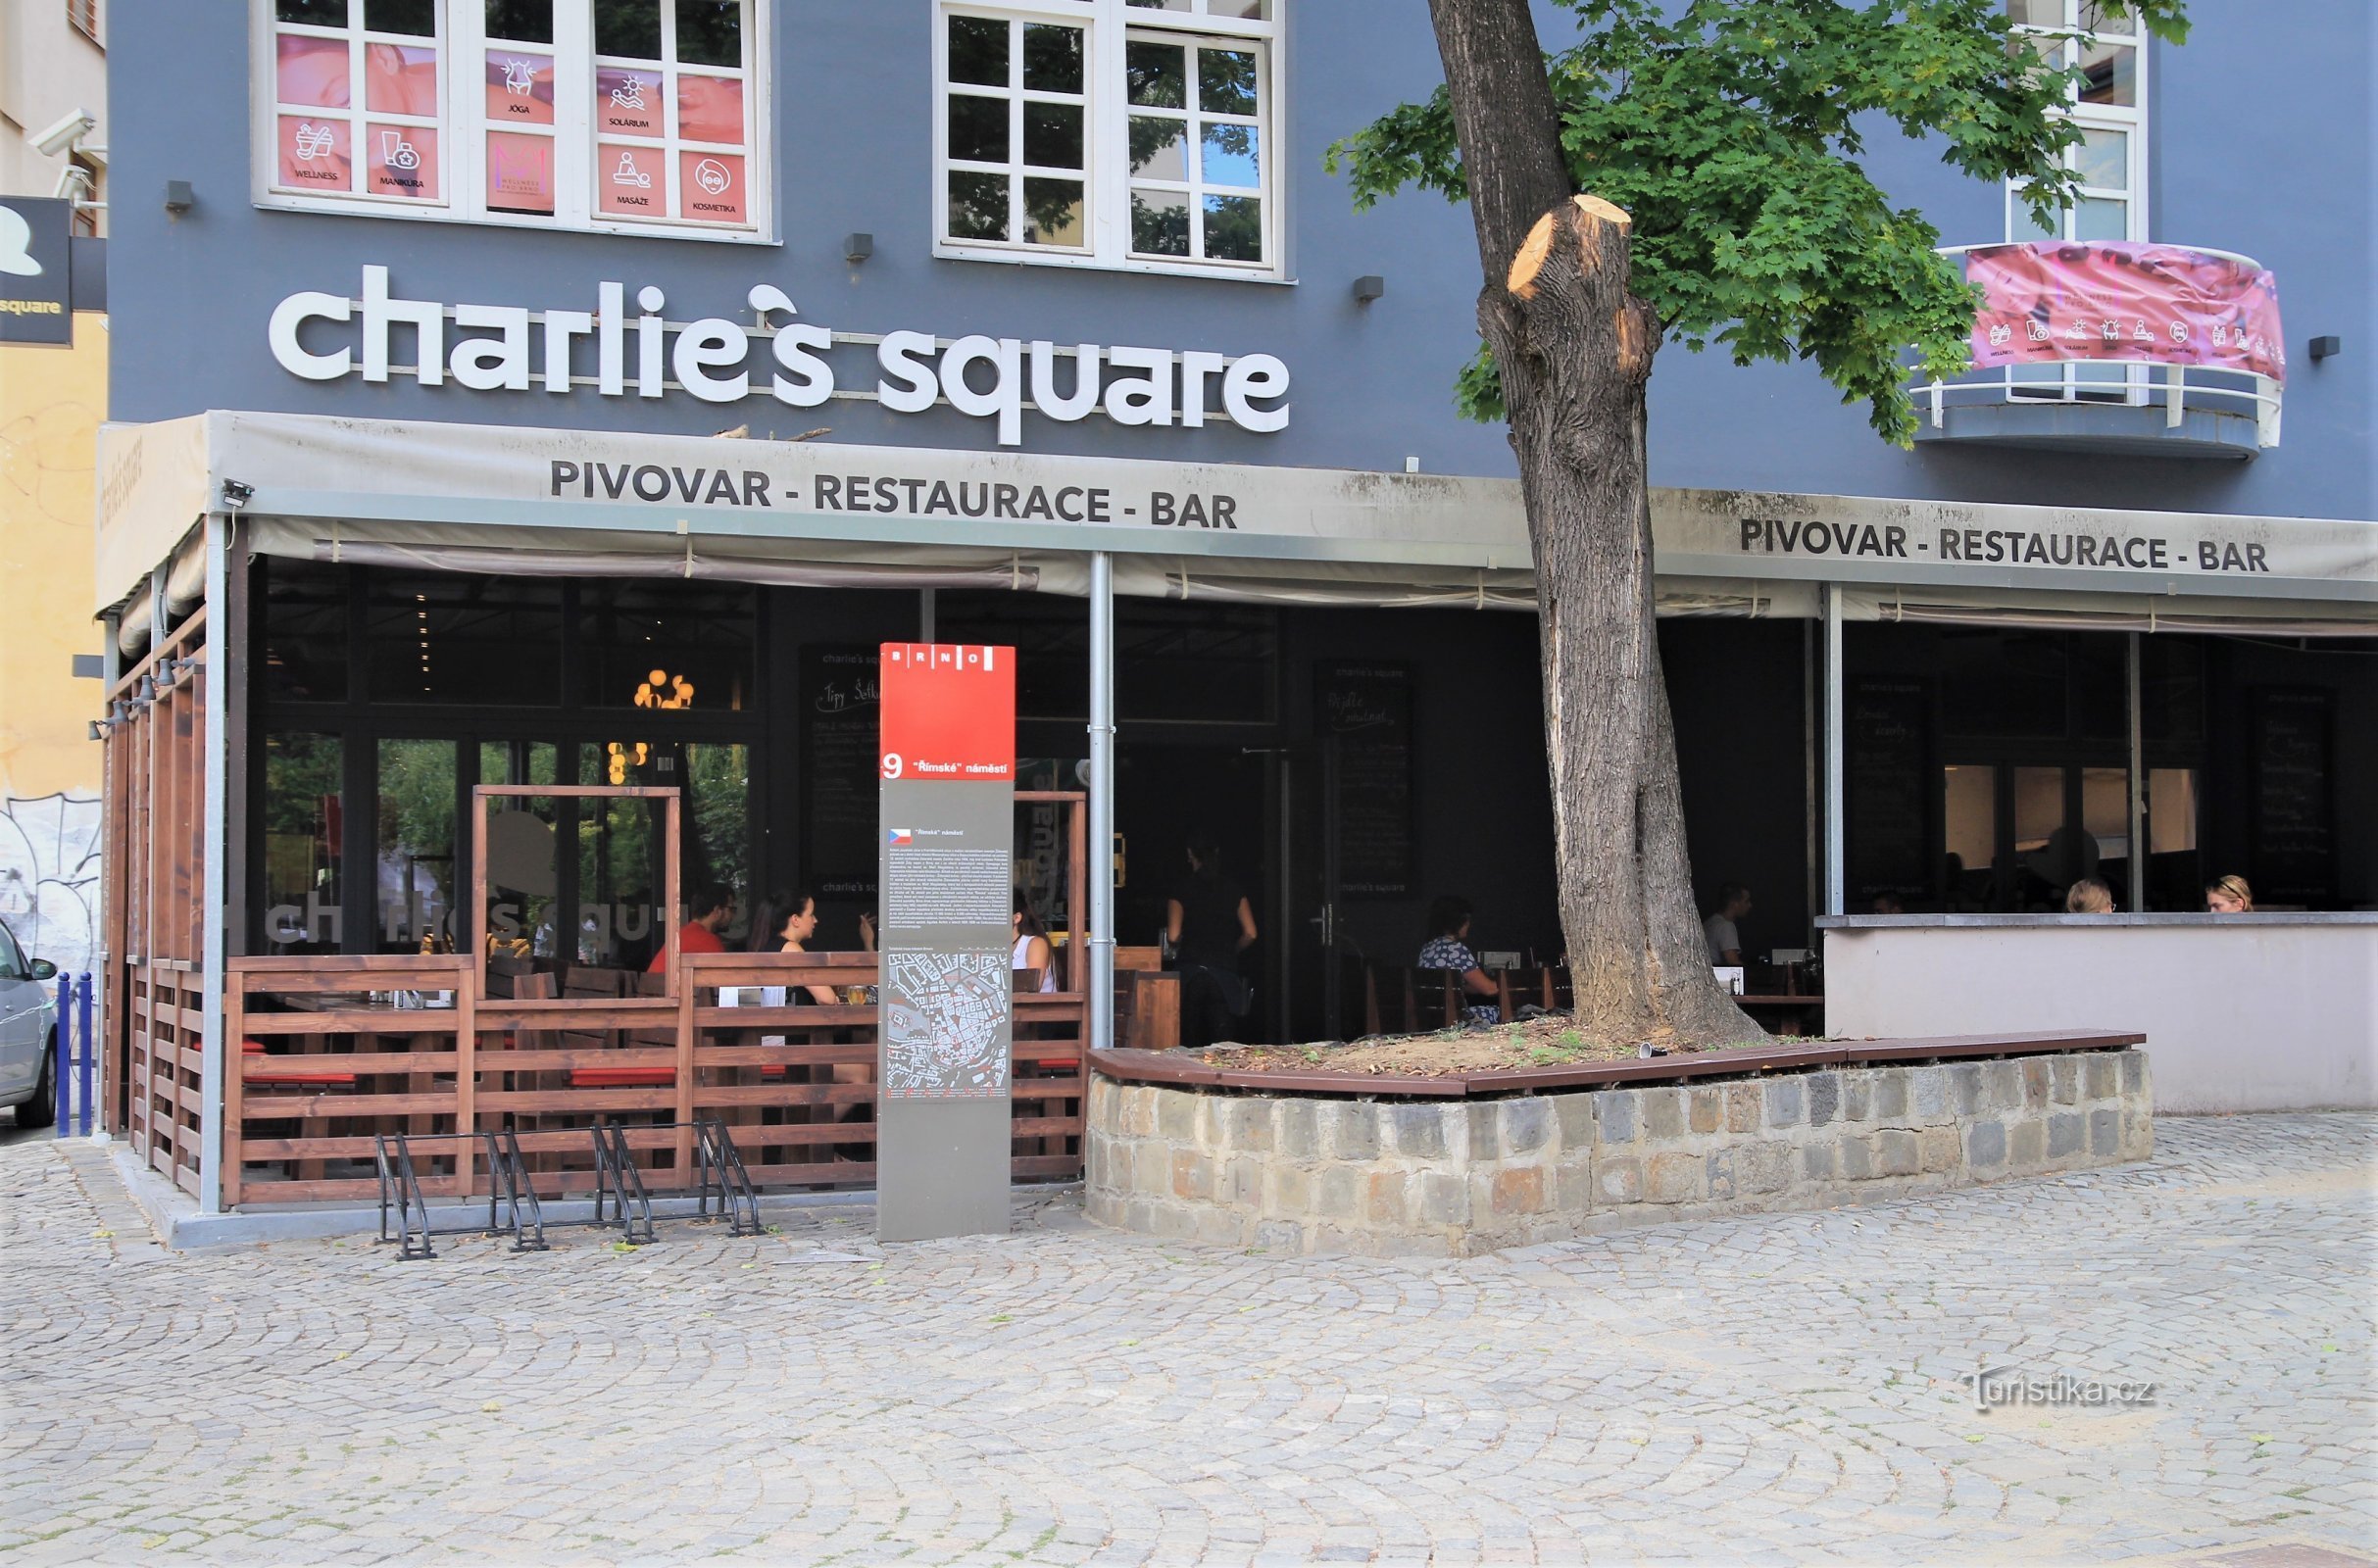 Cervecería artesanal Charlie's Square con un elegante restaurante